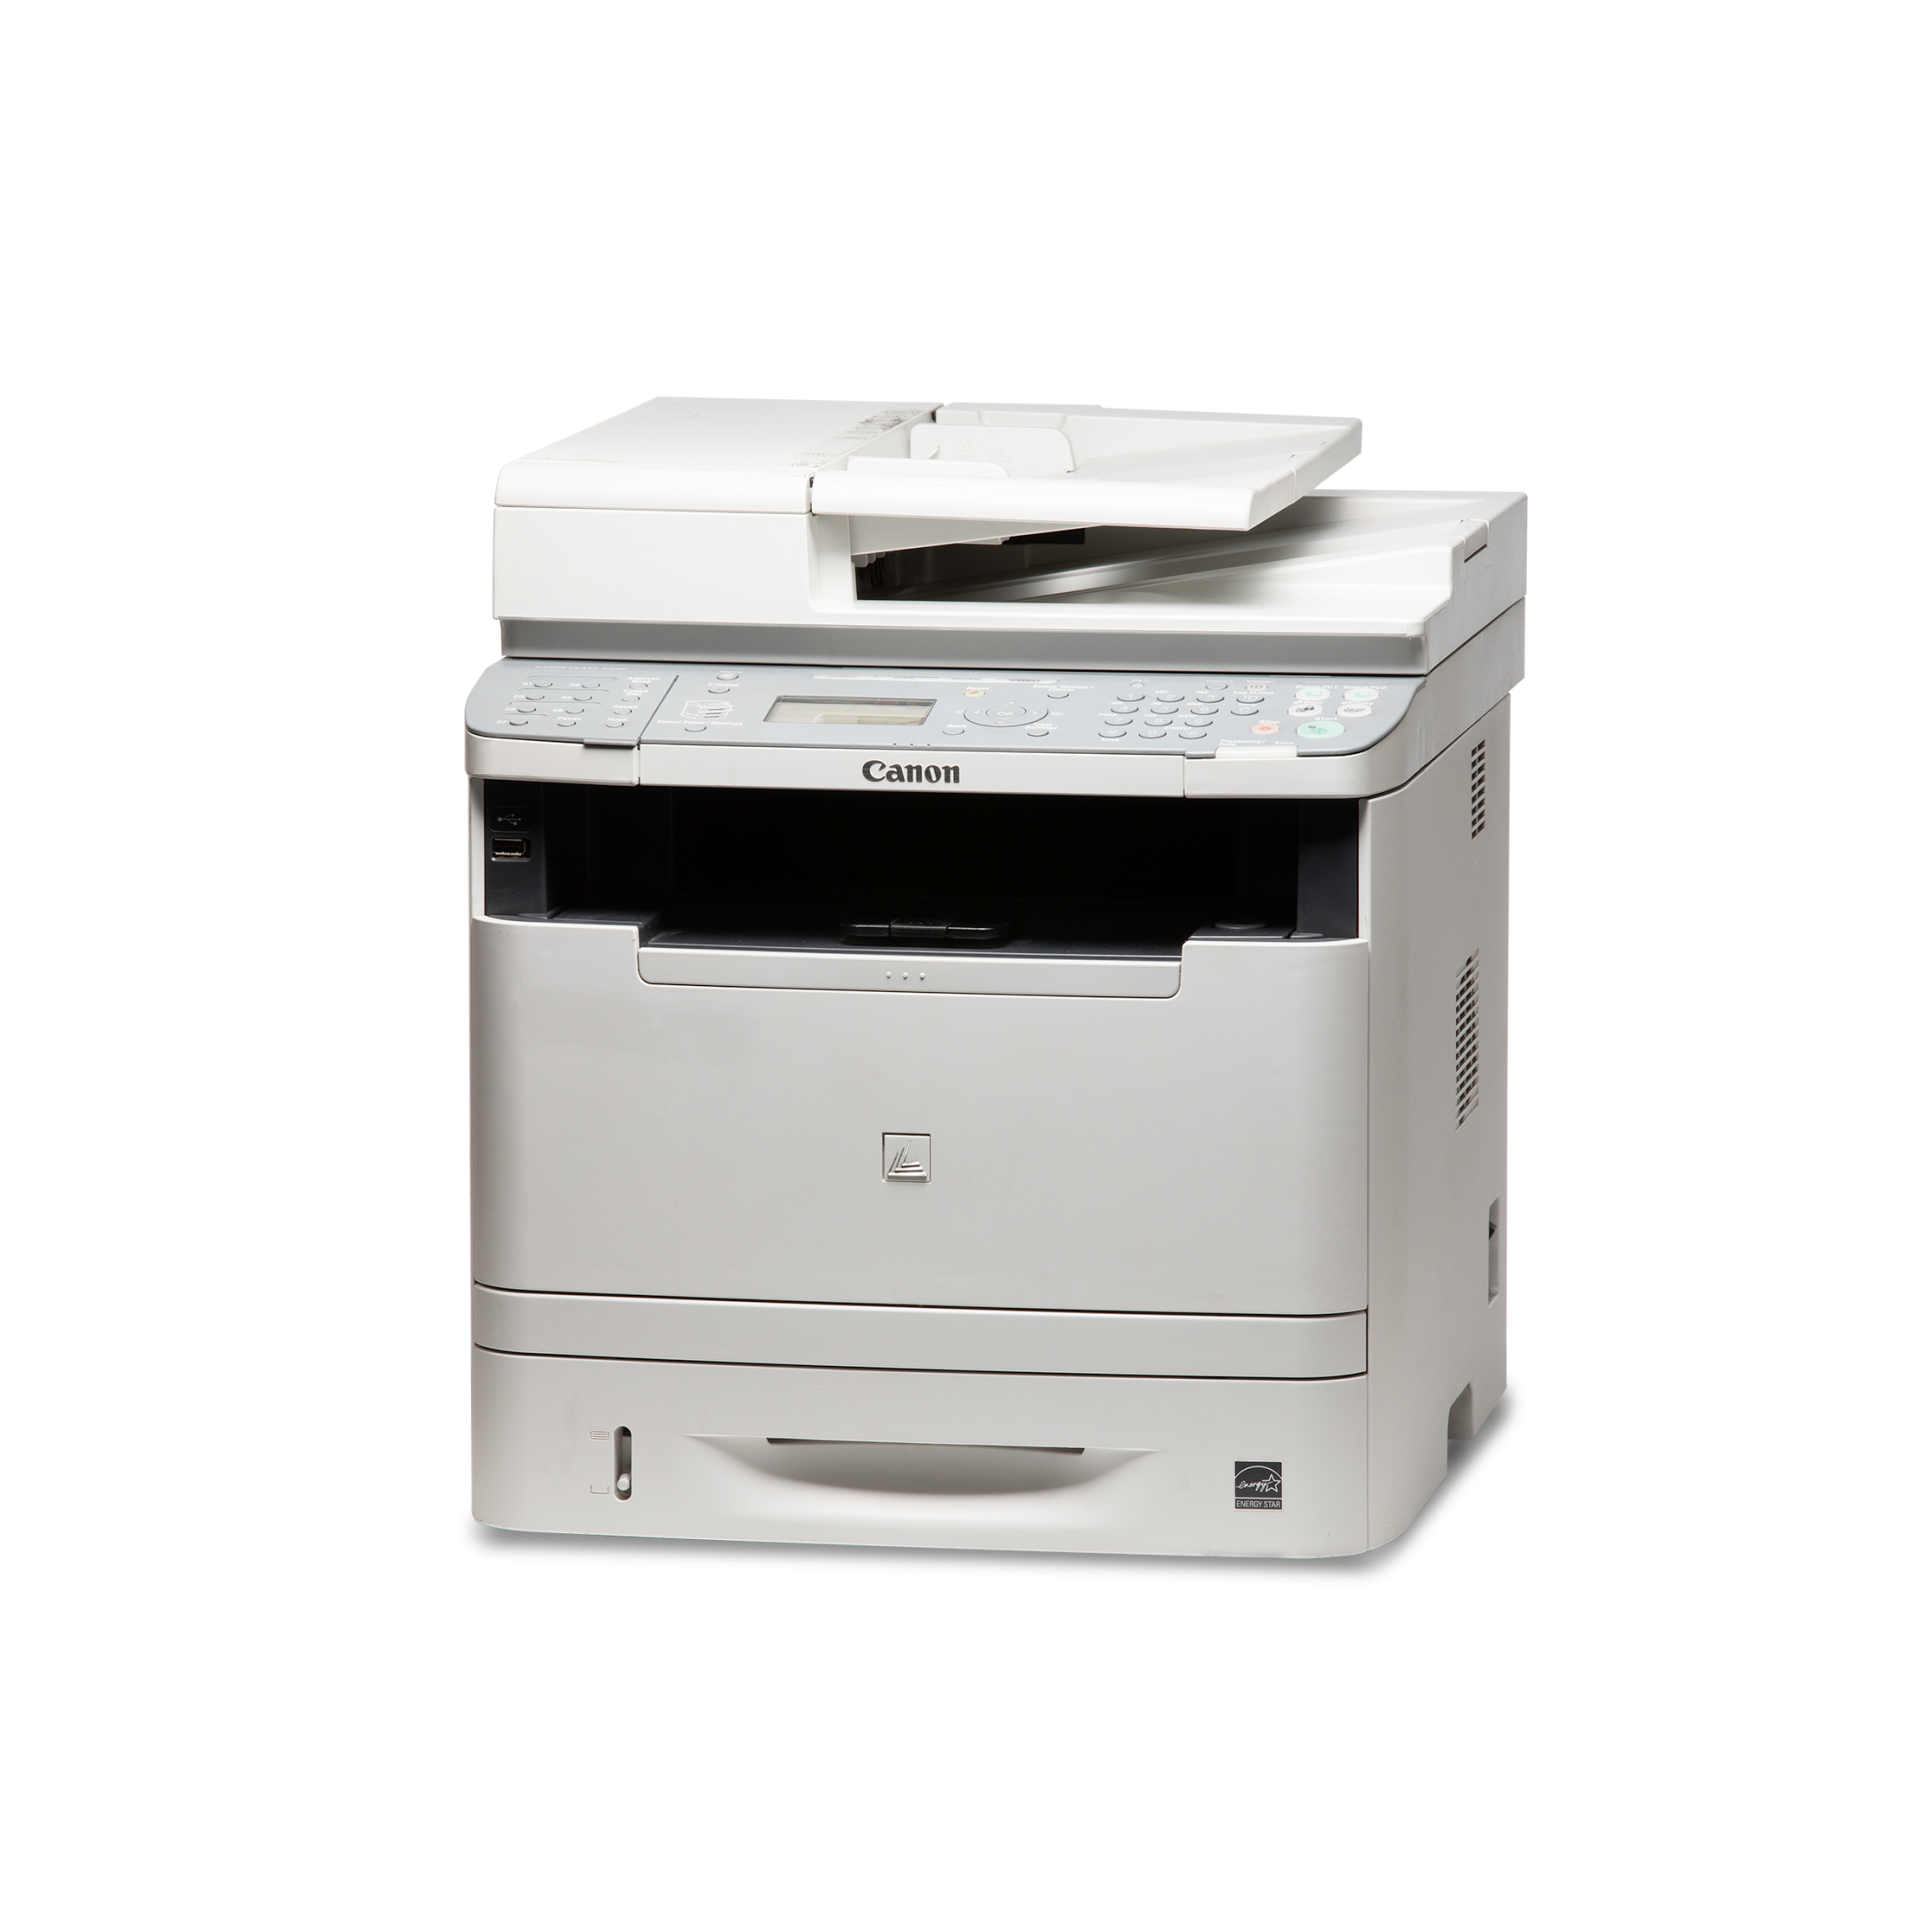 Canon Laser Class 650i Fax Machine